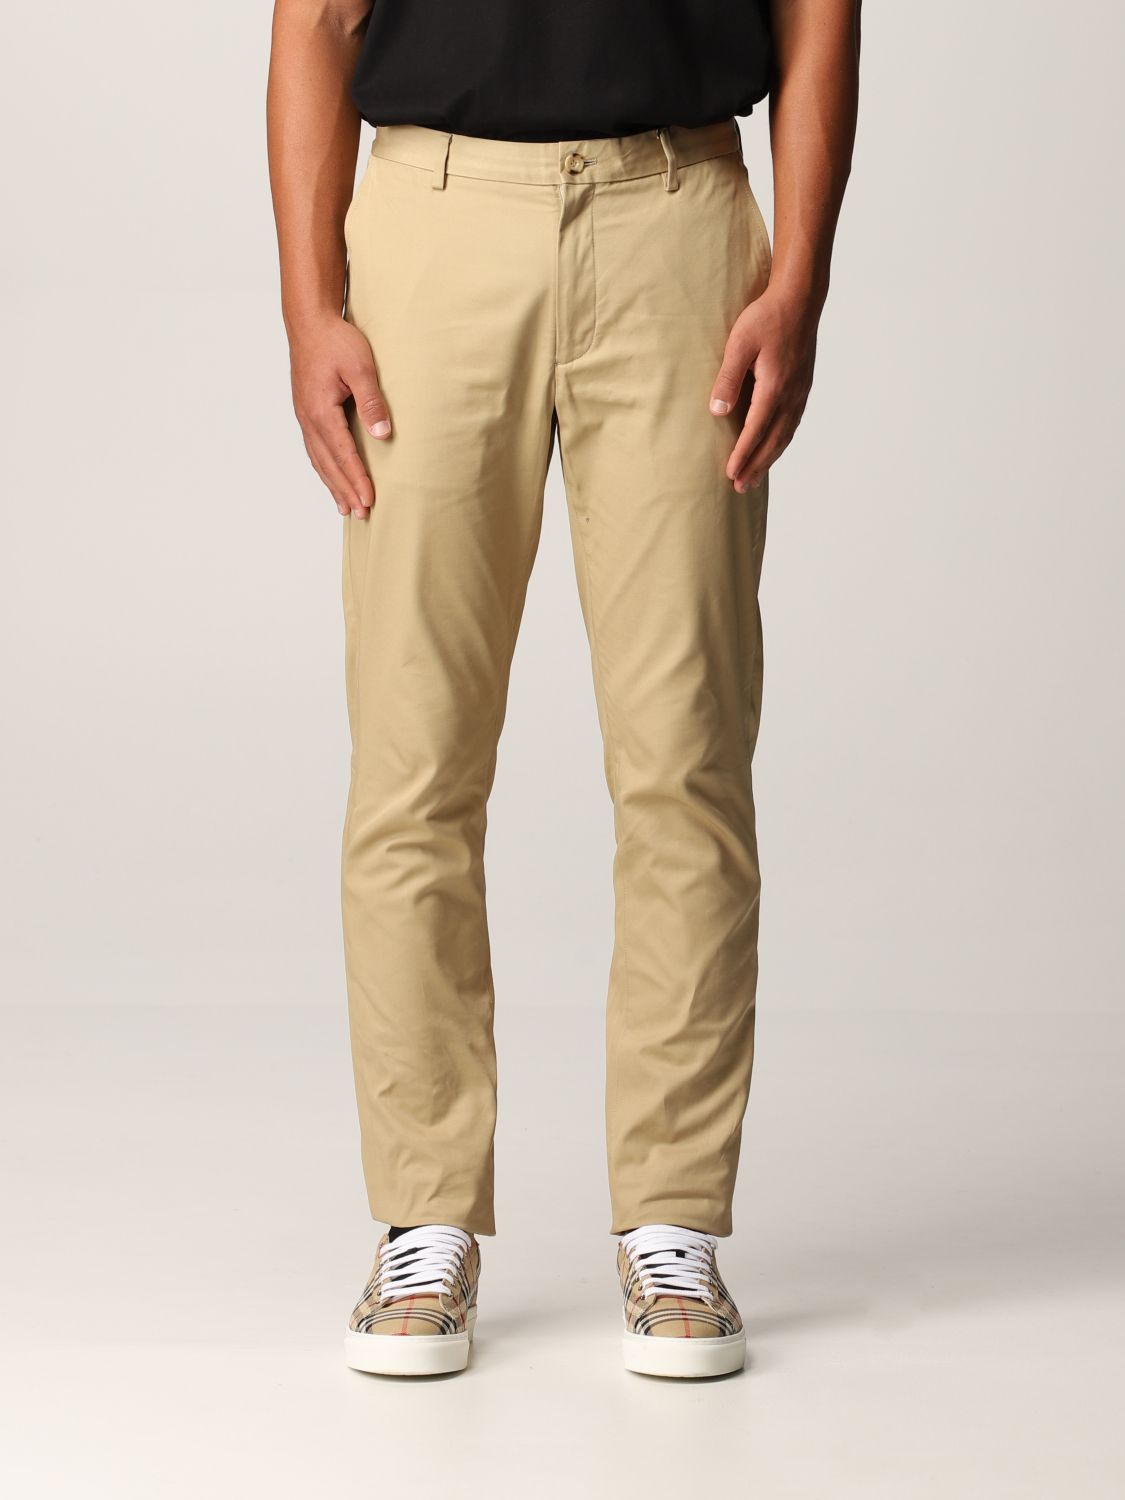 Pantalone Chino in twill di cotone con monogramma Giglio.com Abbigliamento Pantaloni e jeans Pantaloni Pantaloni chinos 